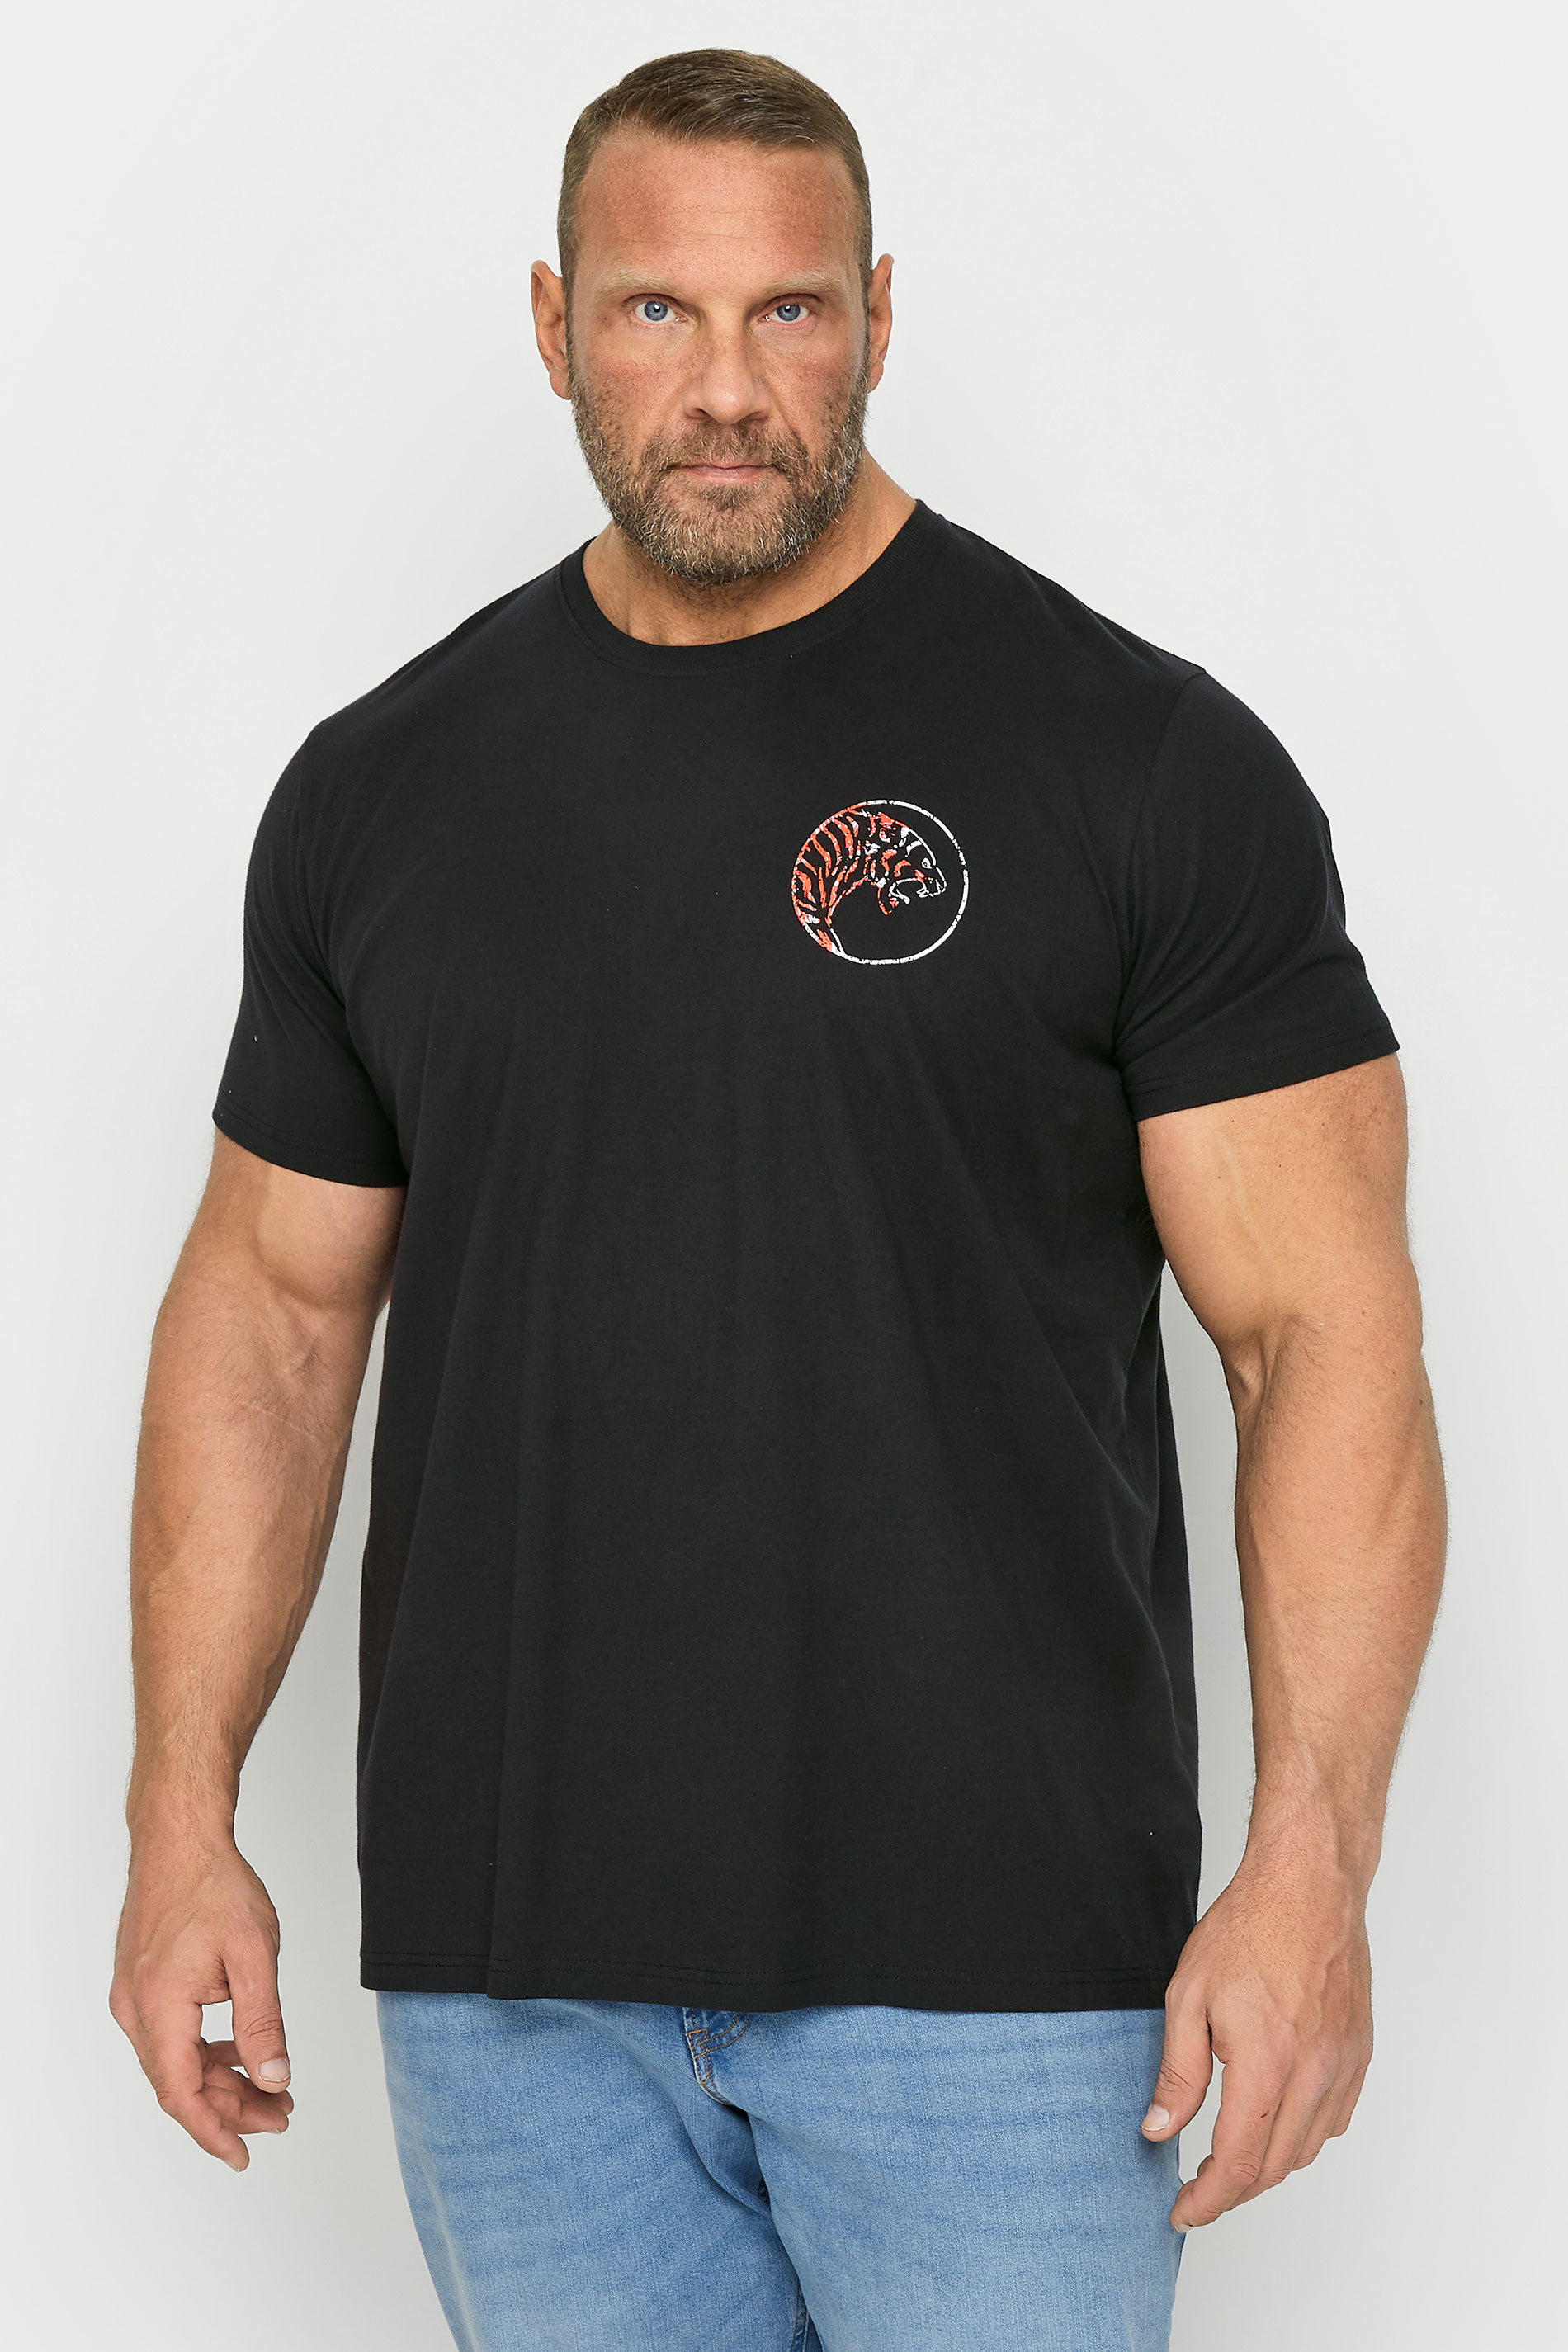 BadRhino Big & Tall Black Tiger Palm Print T-Shirt | BadRhino 1